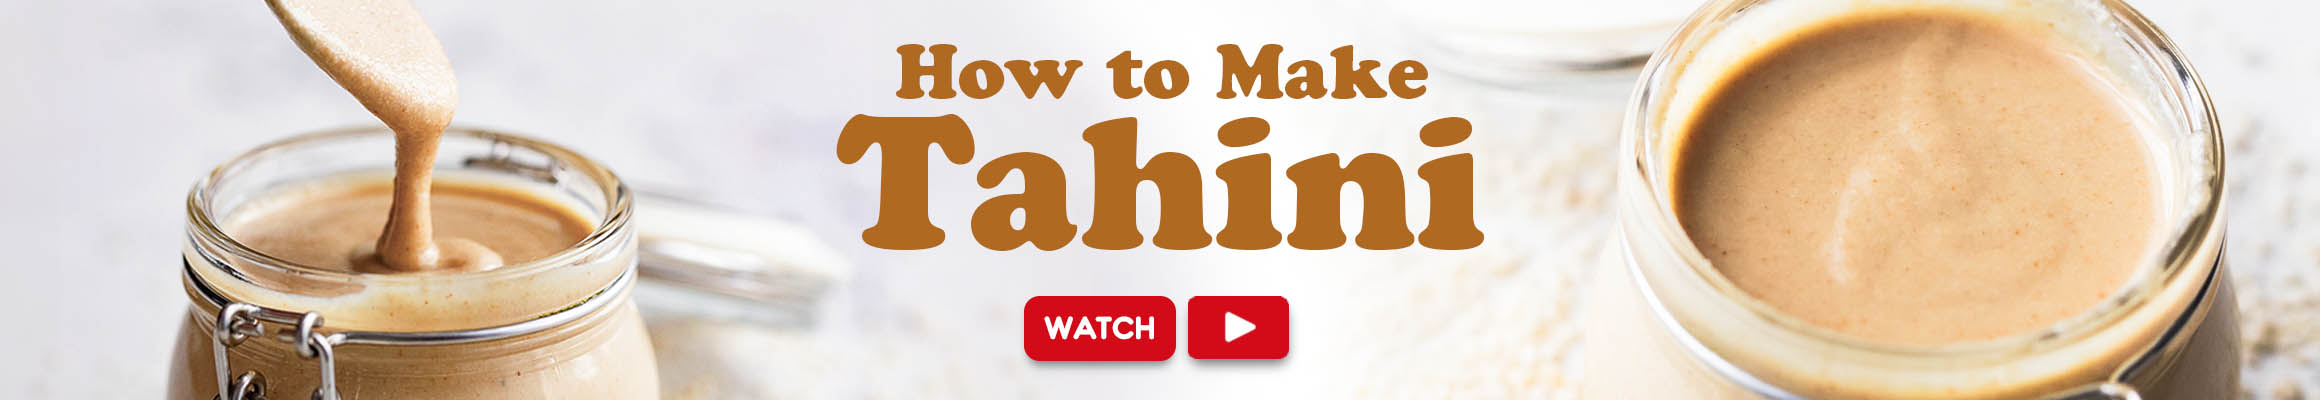 how-to-make-tahini-new-recipe-web